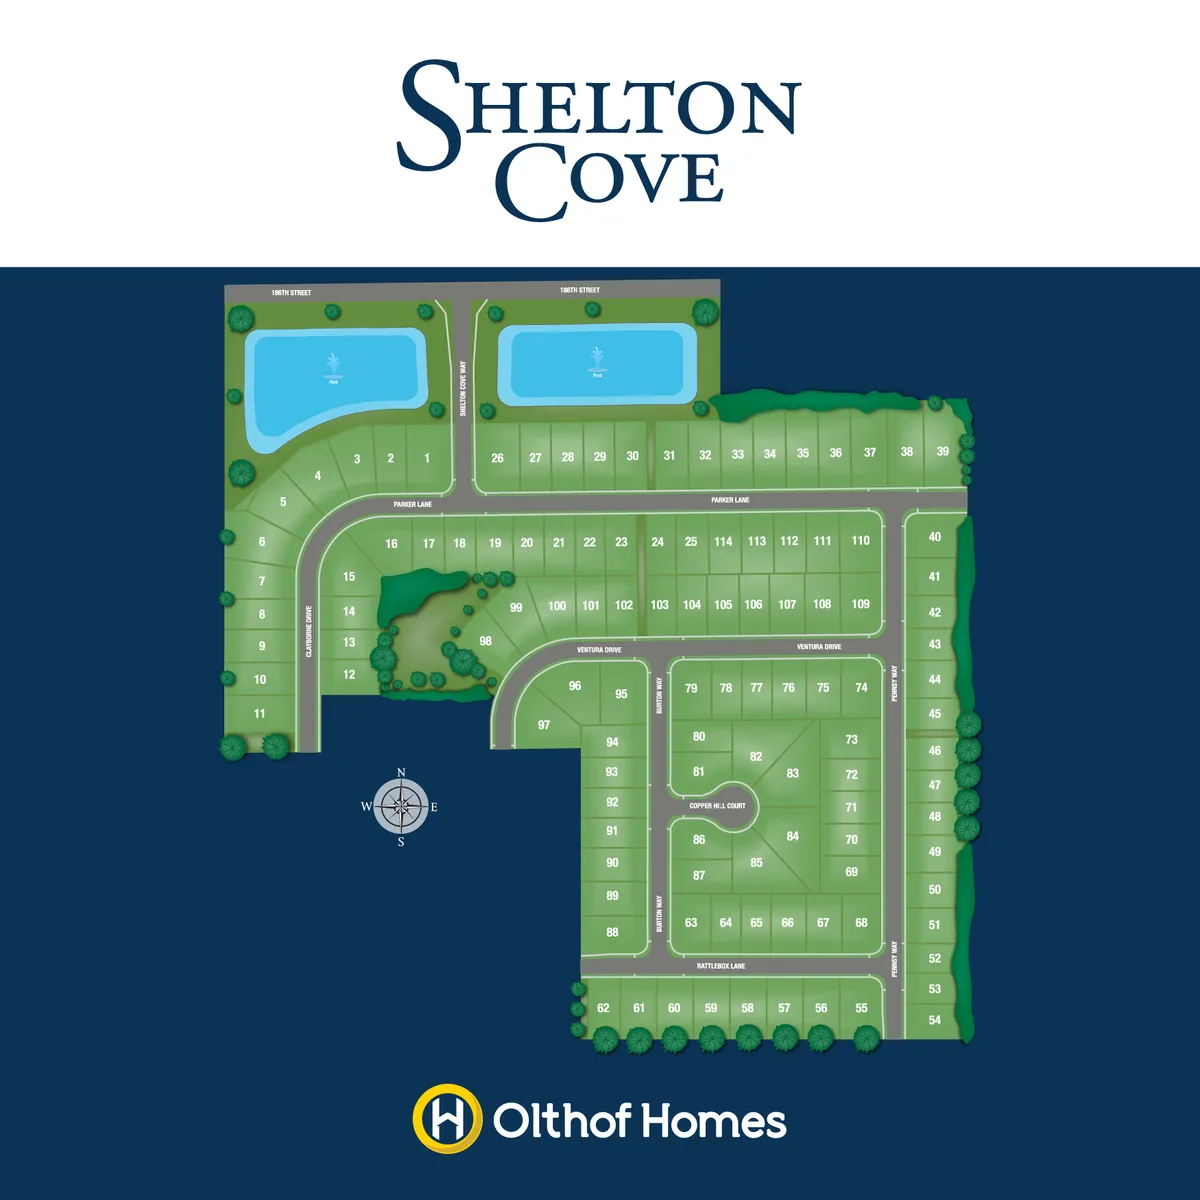 Shelton Cove